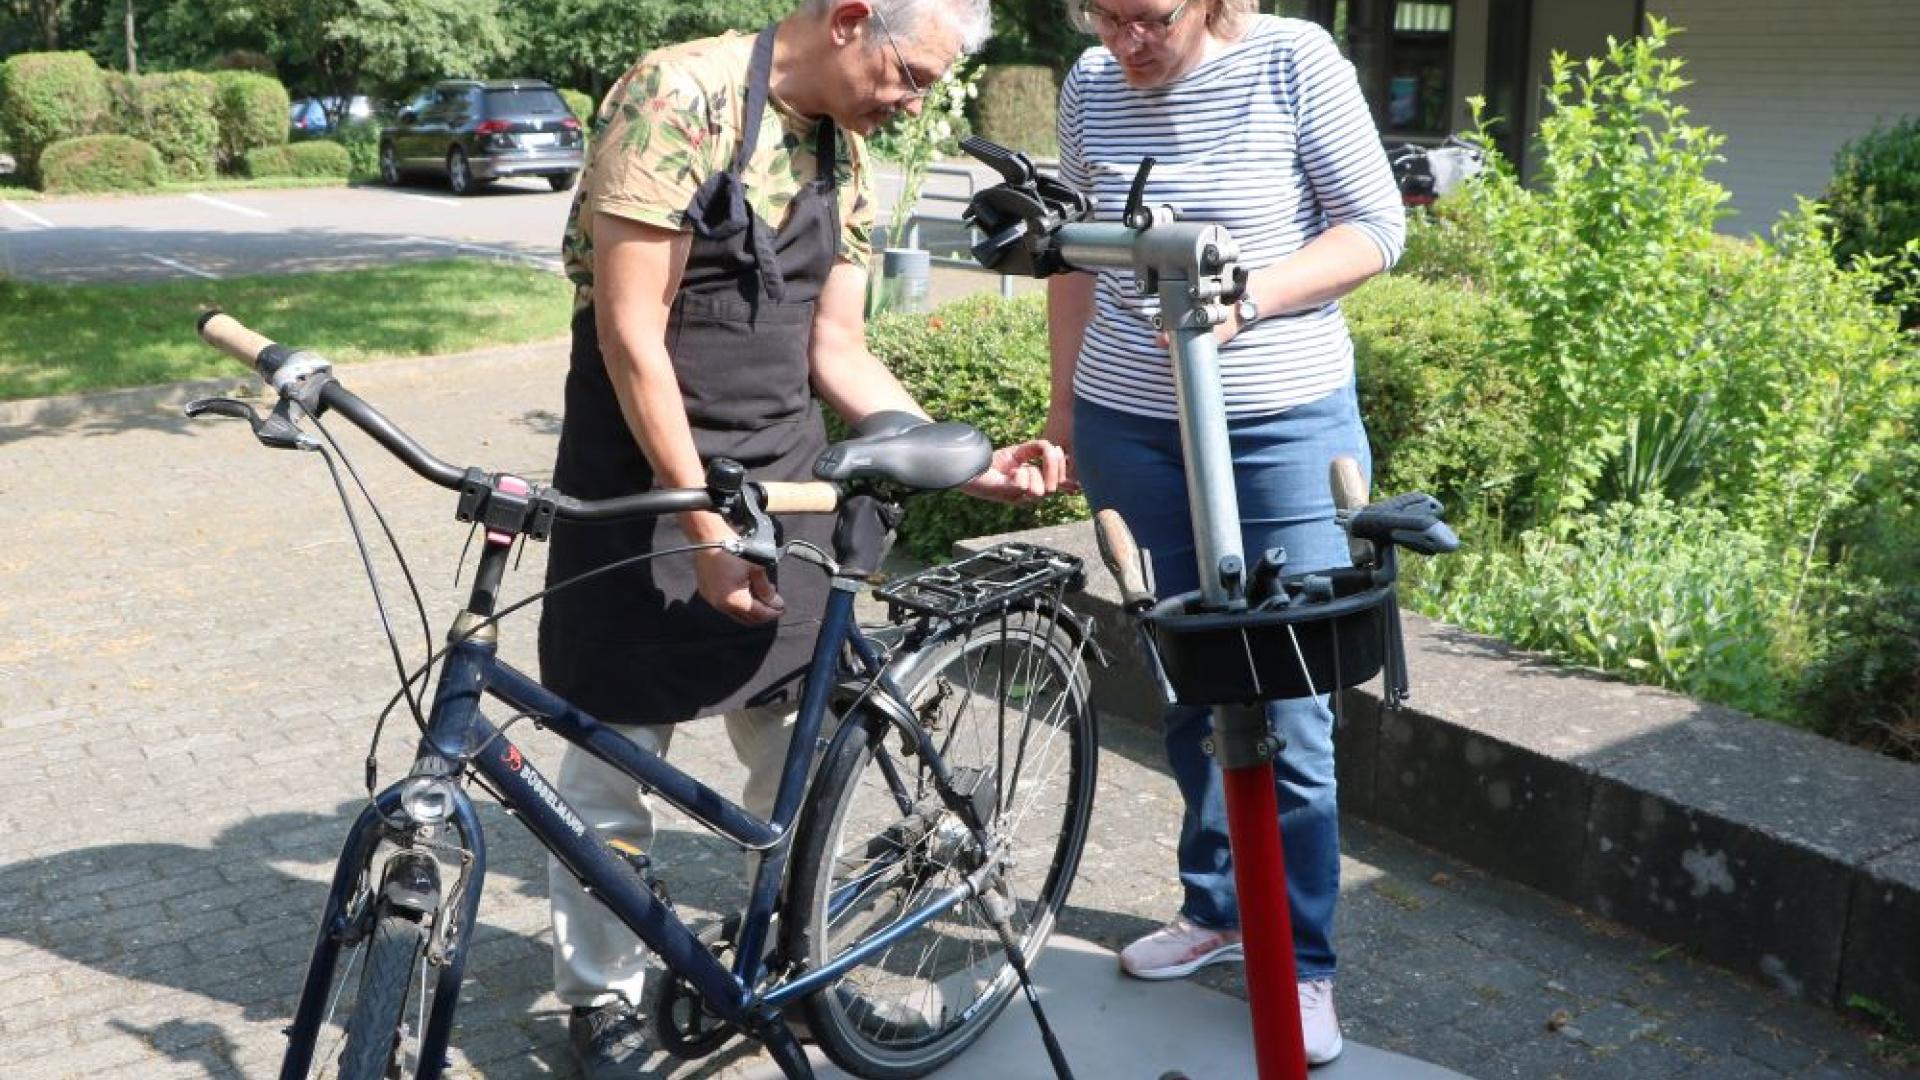 Mann repariert Fahrrad, Frau steht daneben